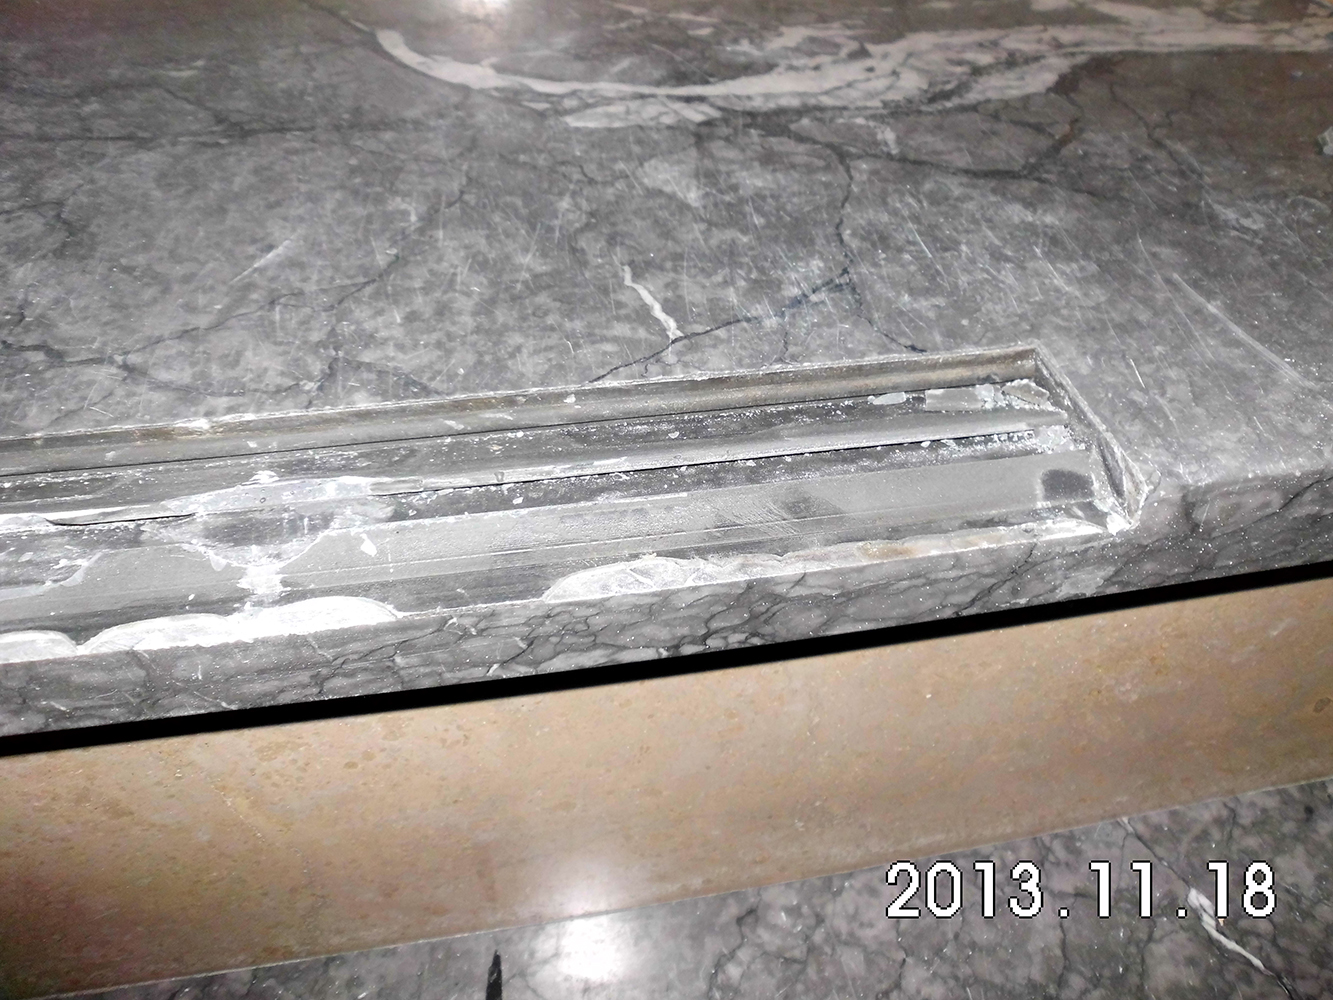 Bild: Tekoschienen, PVC Trittsicherheitskante, Reparaturkante 511 oder Olbrich 310 während dem Austausch durch Naturstein Biermann